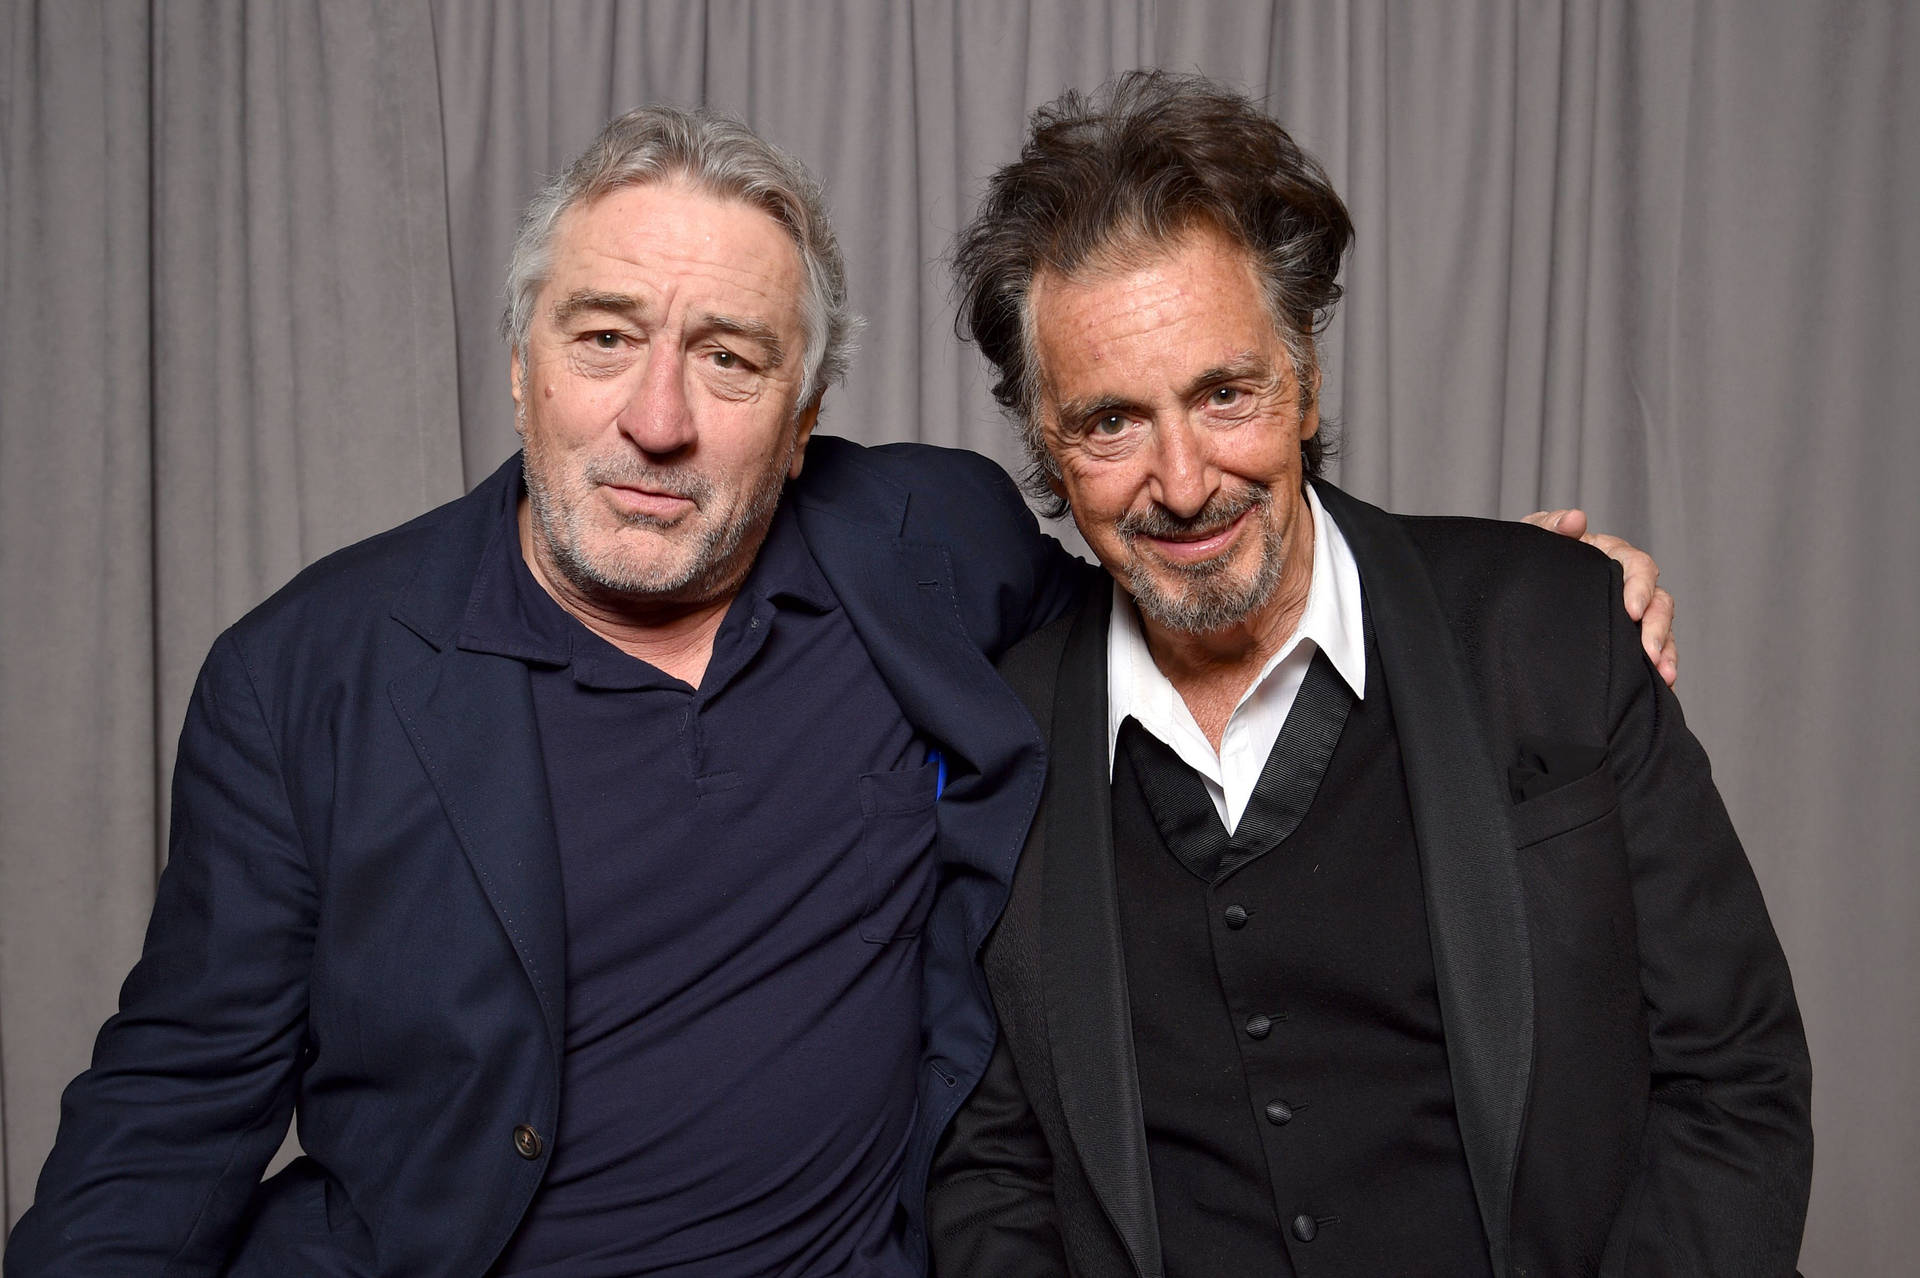 Robert De Niro With Al Pacino Wallpaper